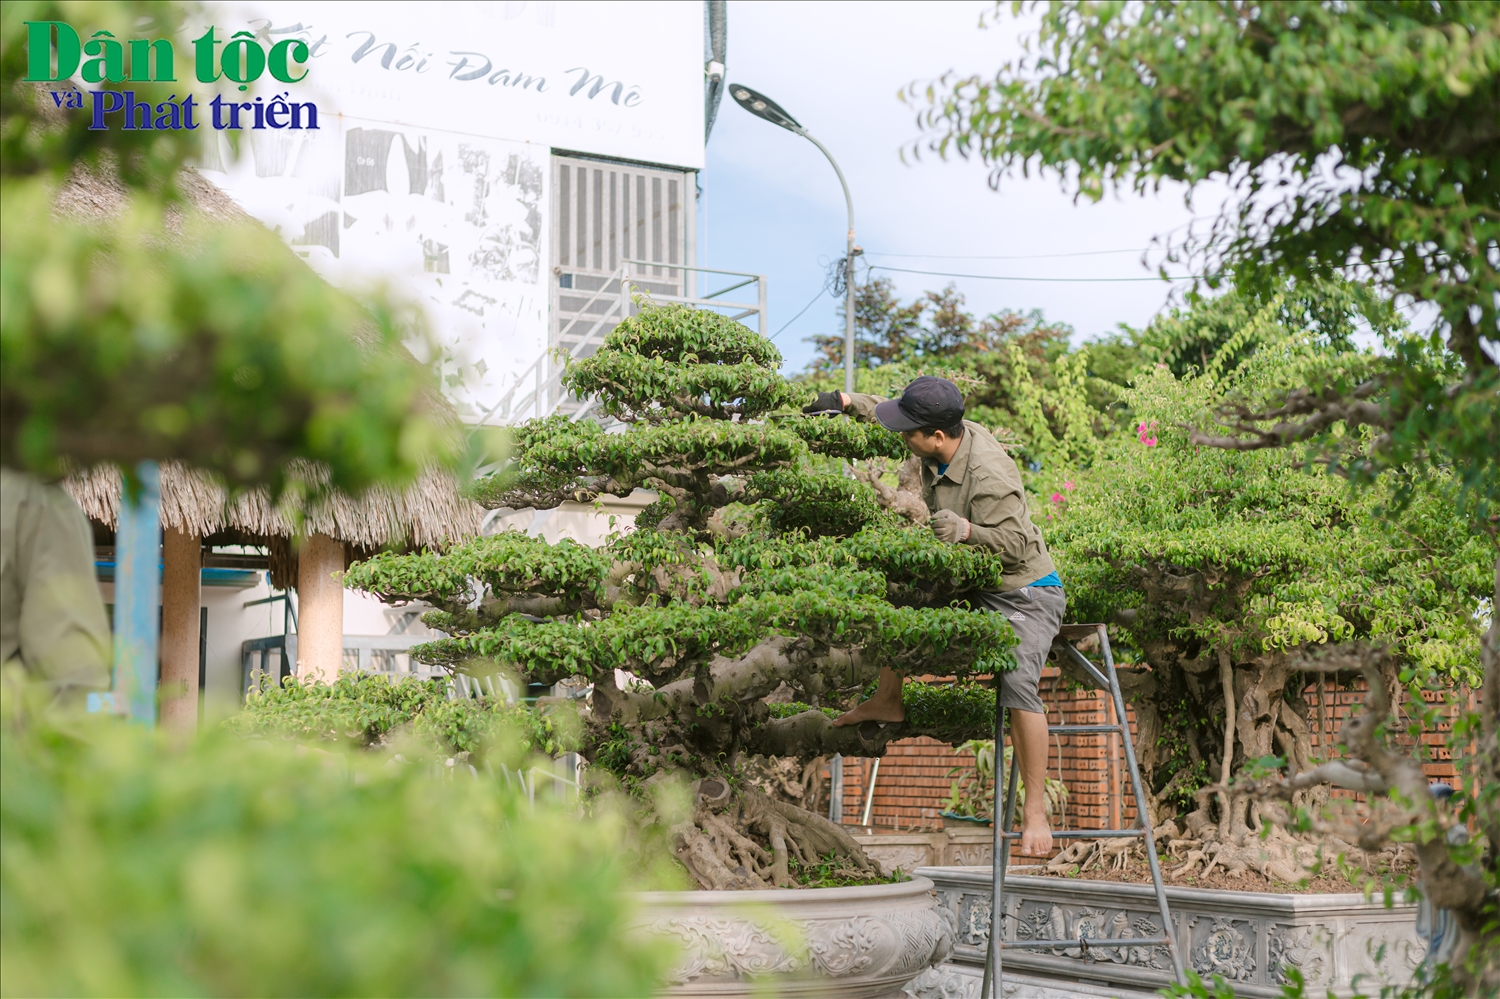 Với hơn 20 năm kinh nghiệm làm nghề, anh Nguyễn Minh Thắng (44 tuổi), người dân thôn Vị Khê chia sẻ: “Mỗi người có cách cảm nhận và thổi hổn vào cây khác nhau, vì thế cũng tạo ra các cây có dáng vẻ và biểu đạt ý tưởng khác nhau”. 